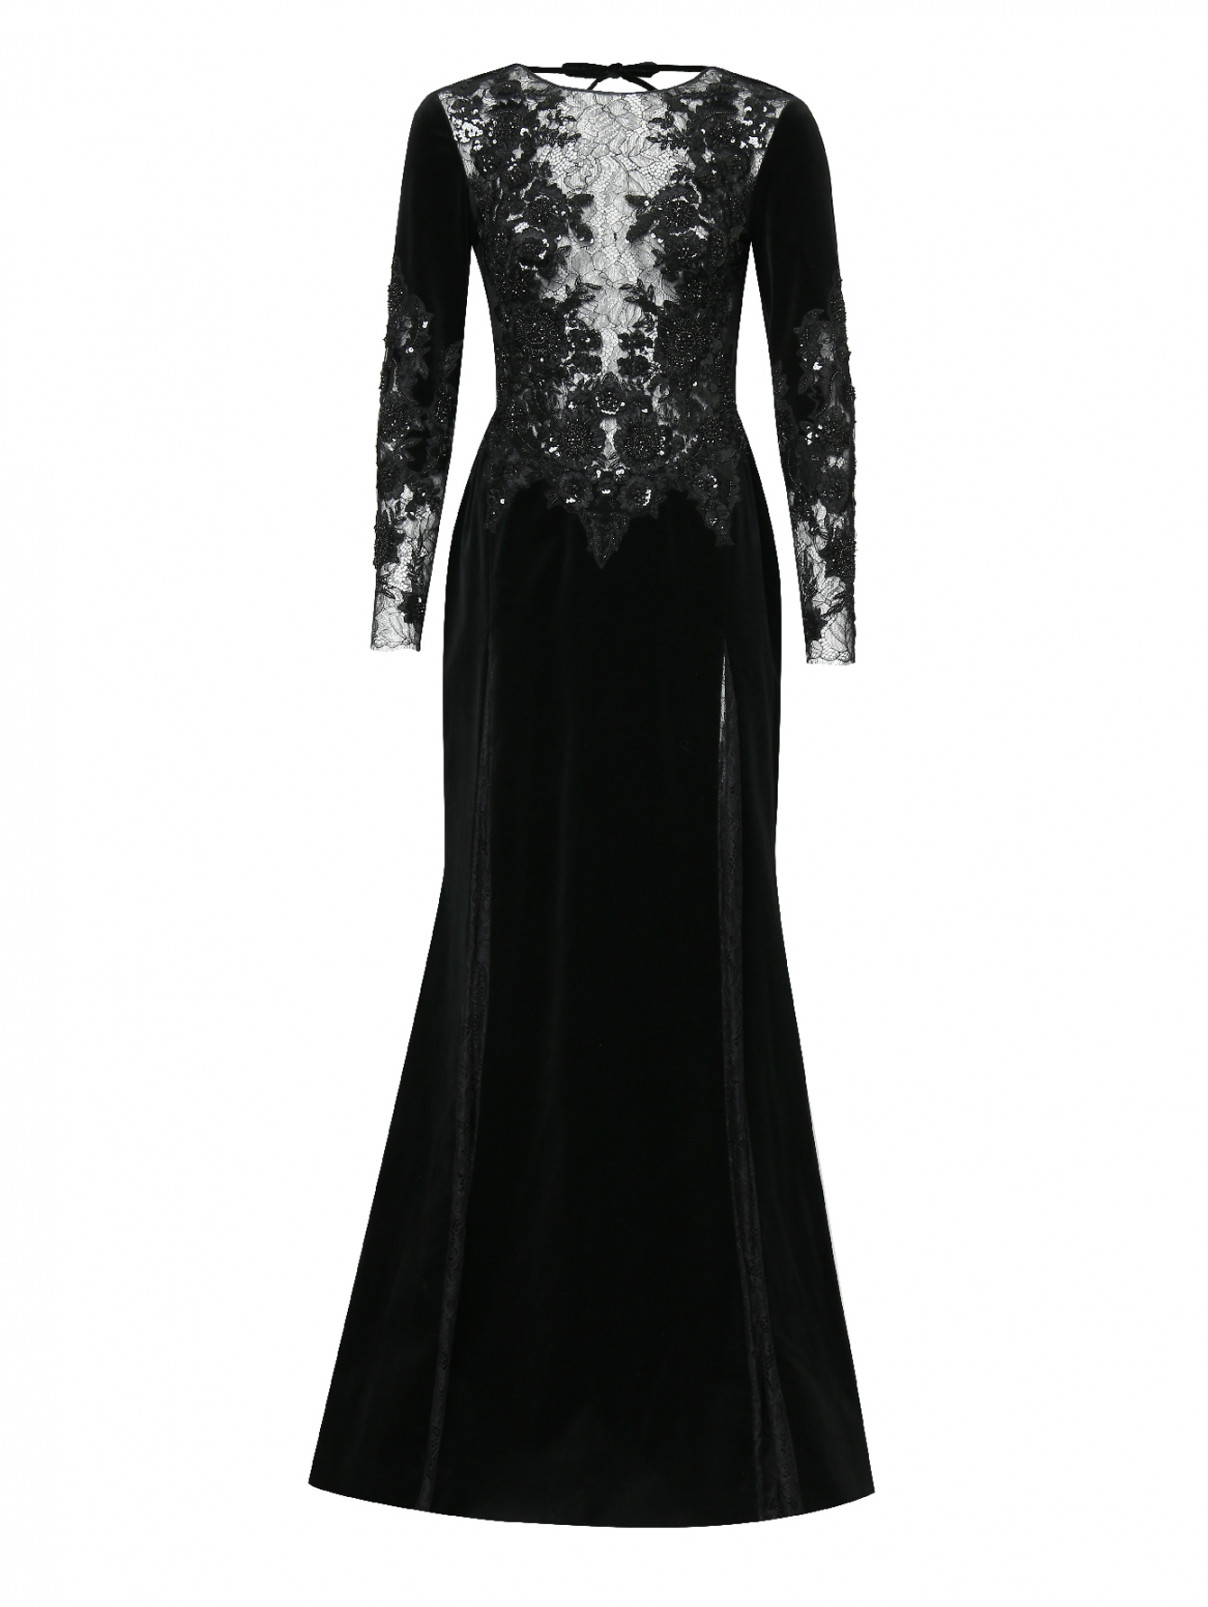 Платье-макси из бархата декорированное кристаллами Zuhair Murad  –  Общий вид  – Цвет:  Черный